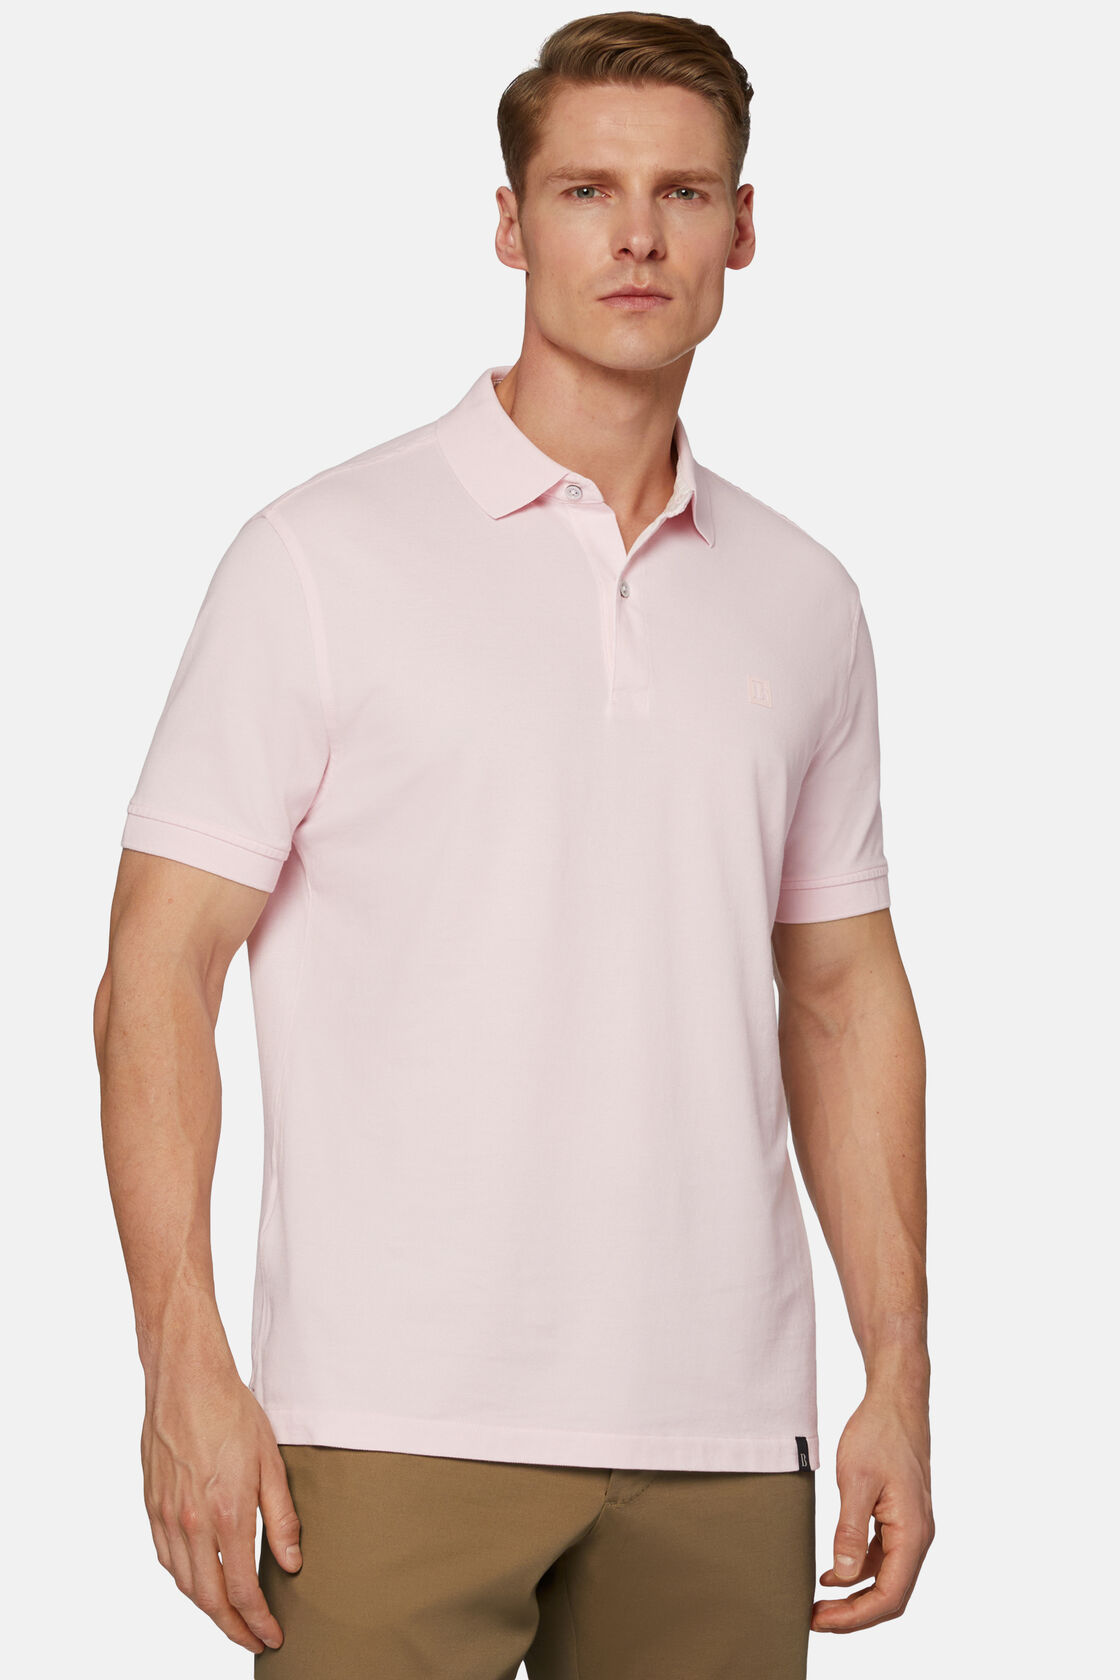 Βαμβακερό πικέ μπλουζάκι πόλο, Pink, hi-res